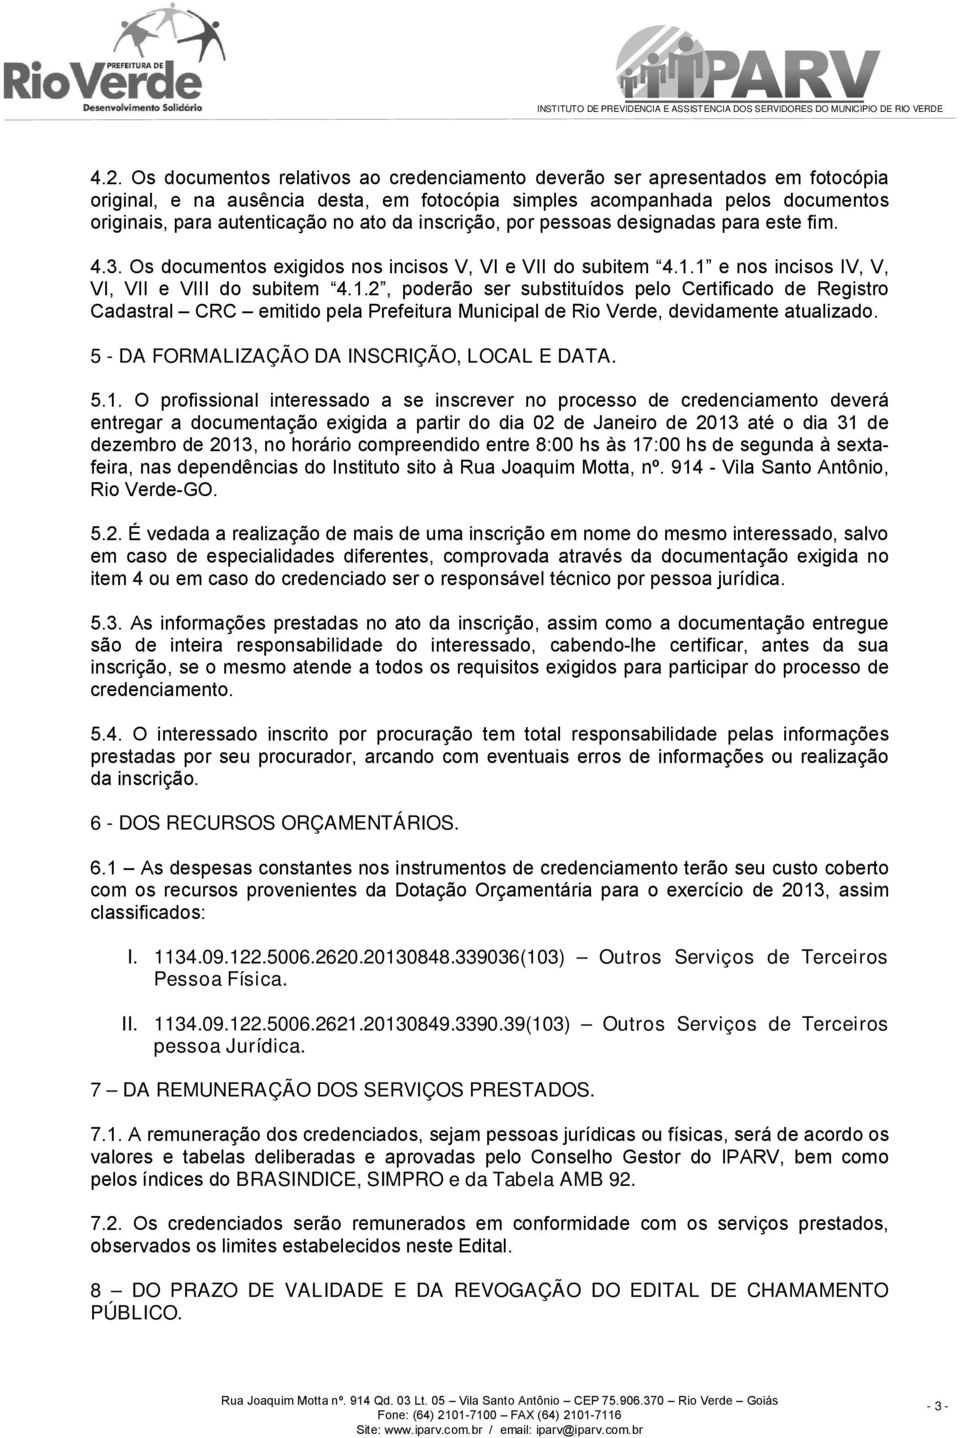 1 e nos incisos IV, V, VI, VII e VIII do subitem 4.1.2, poderão ser substituídos pelo Certificado de Registro Cadastral CRC emitido pela Prefeitura Municipal de Rio Verde, devidamente atualizado.